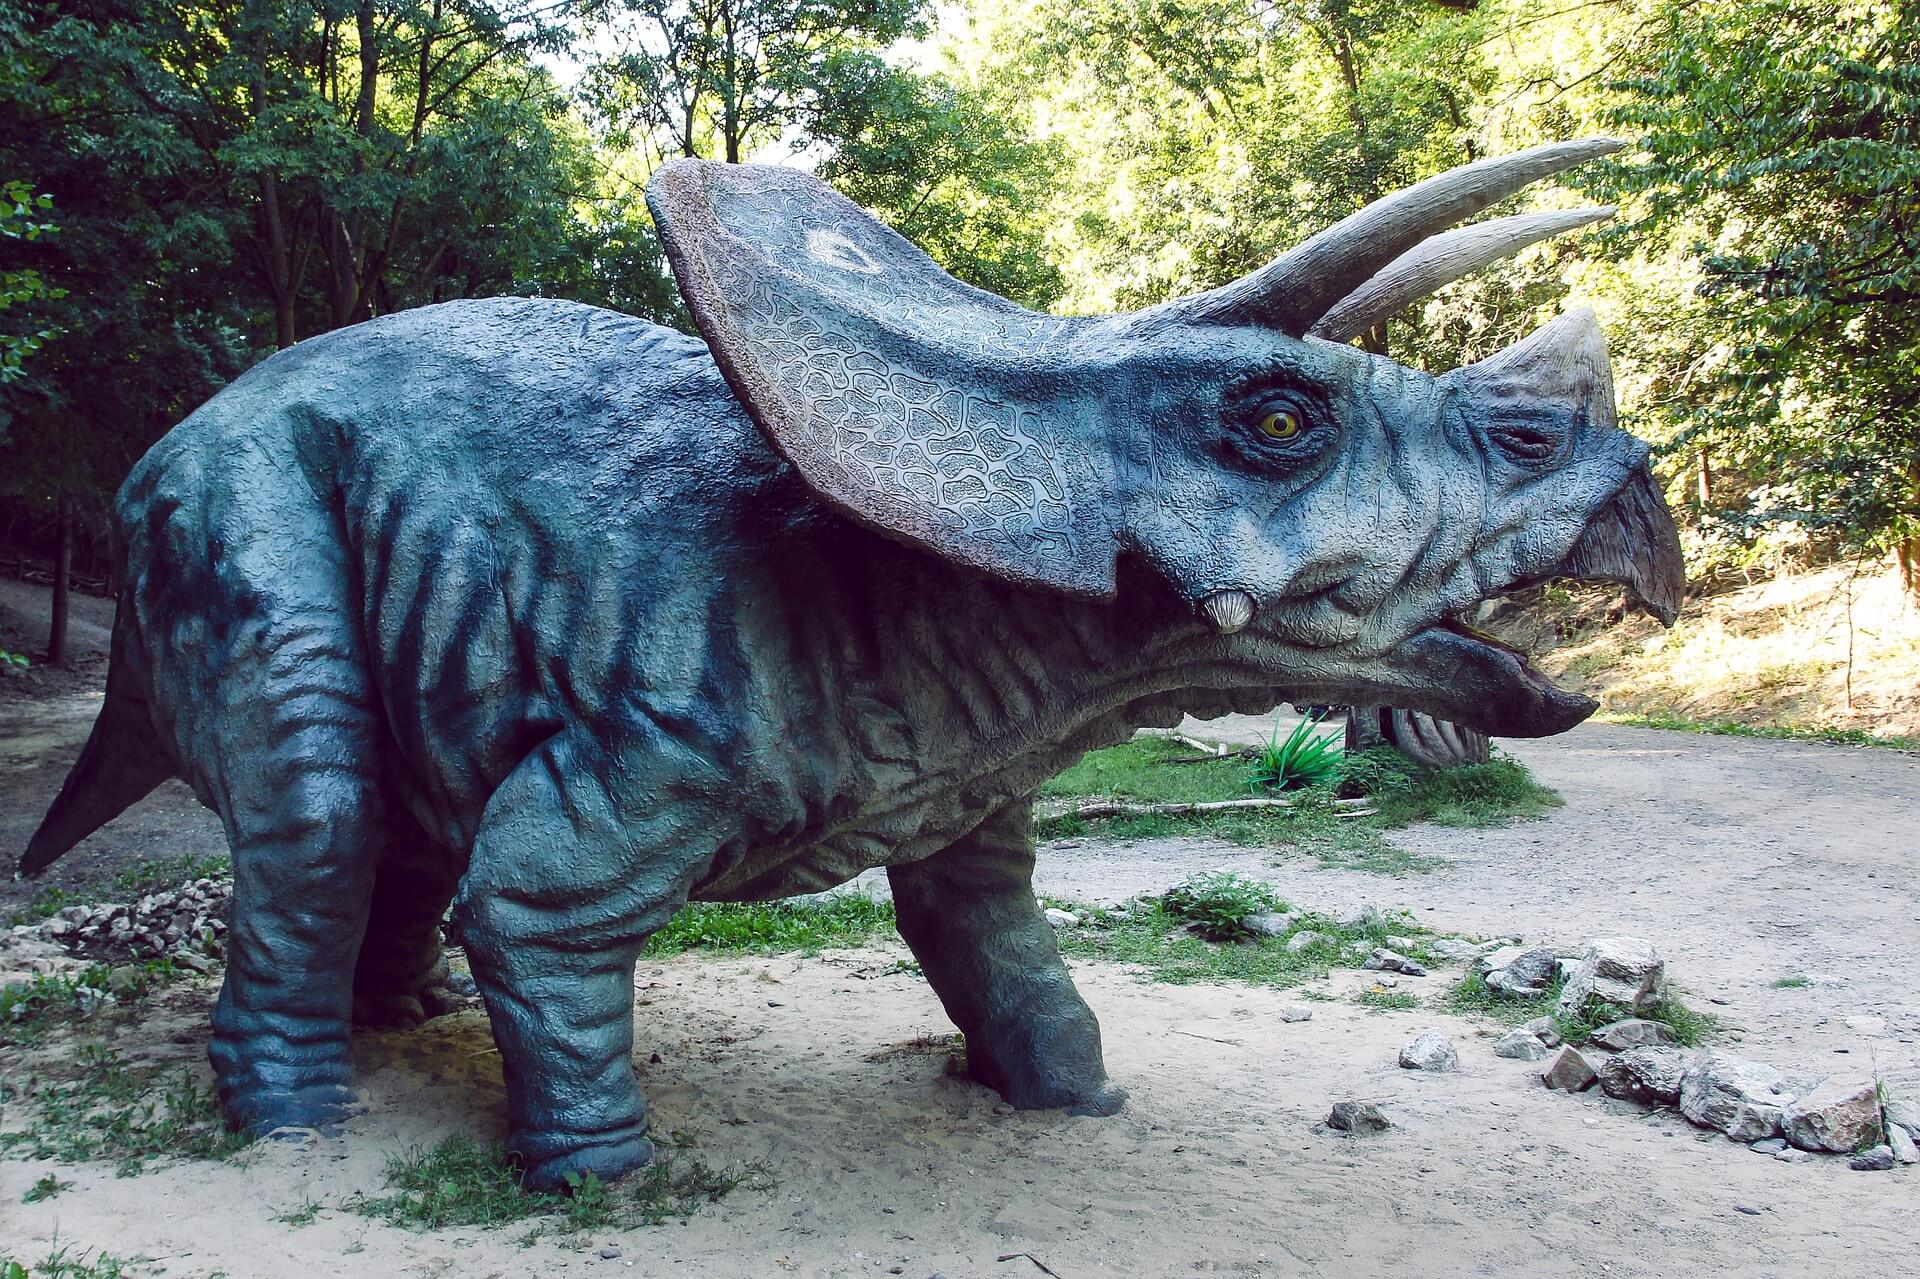 El triceratops, uno de los dinosaurios más famosos, en su hábitat